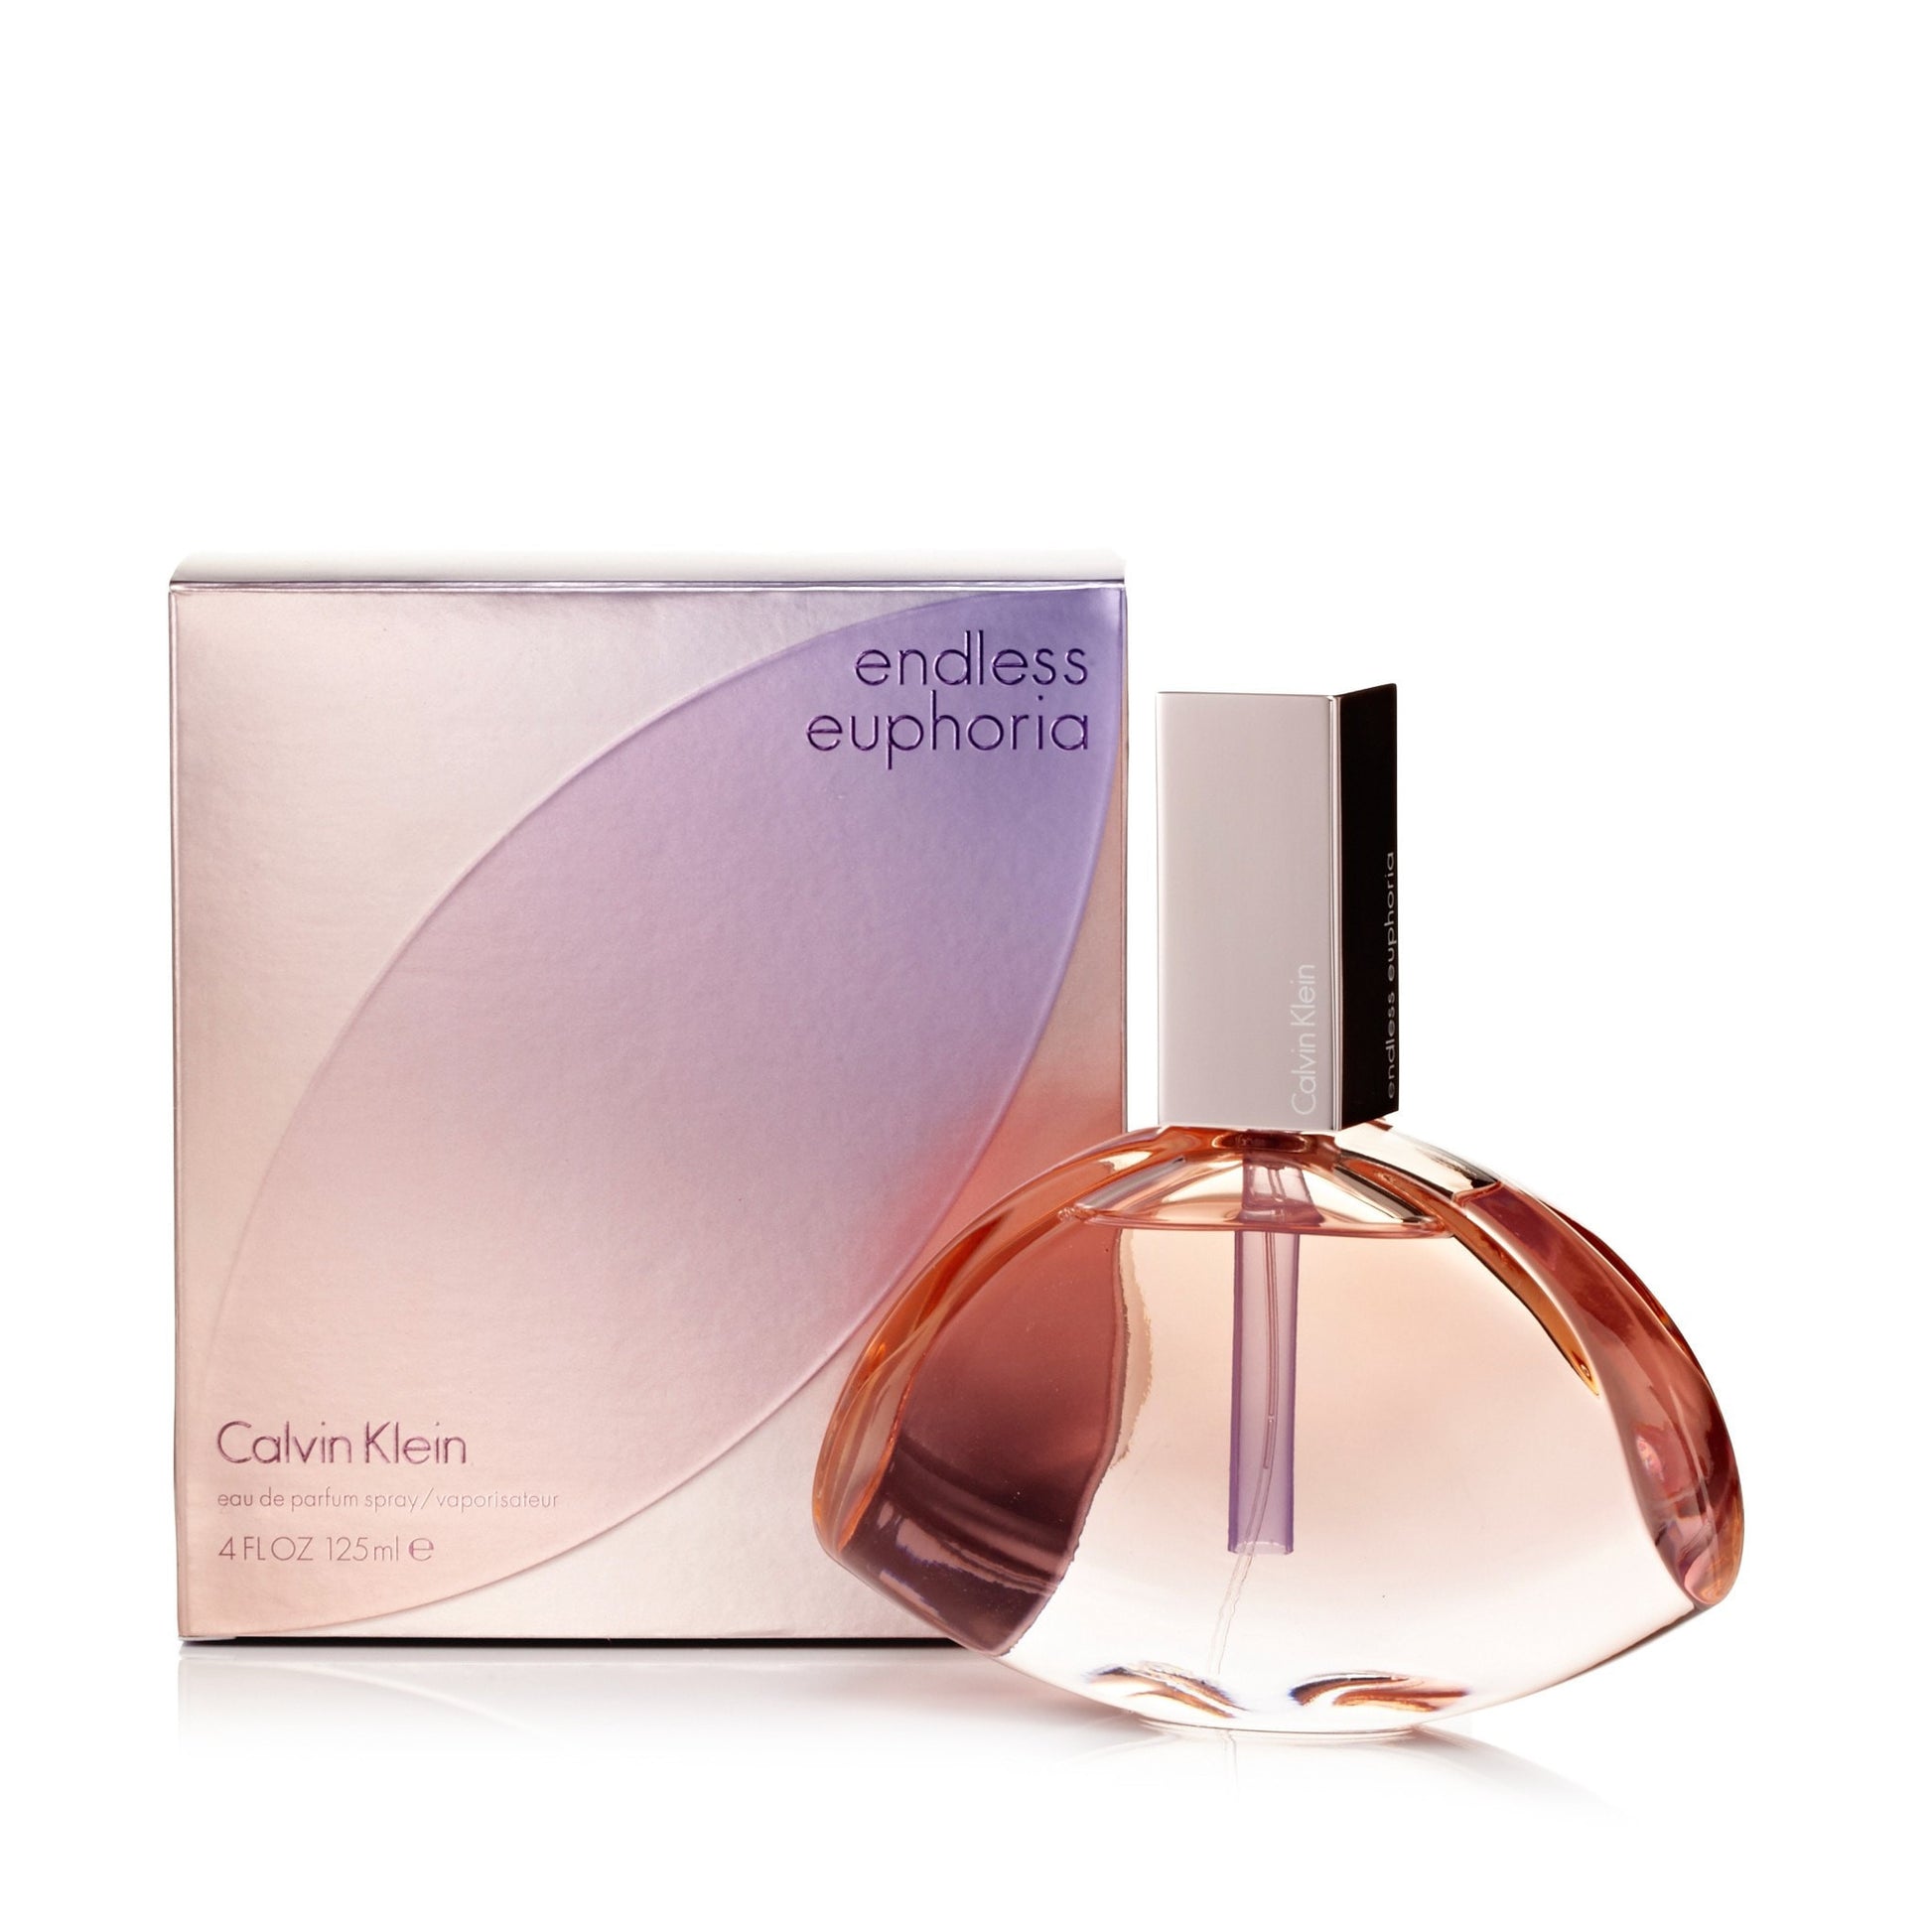 Euphoria Endless Eau de Parfum Spray for Women by Calvin Klein 4.0 oz. Click to open in modal